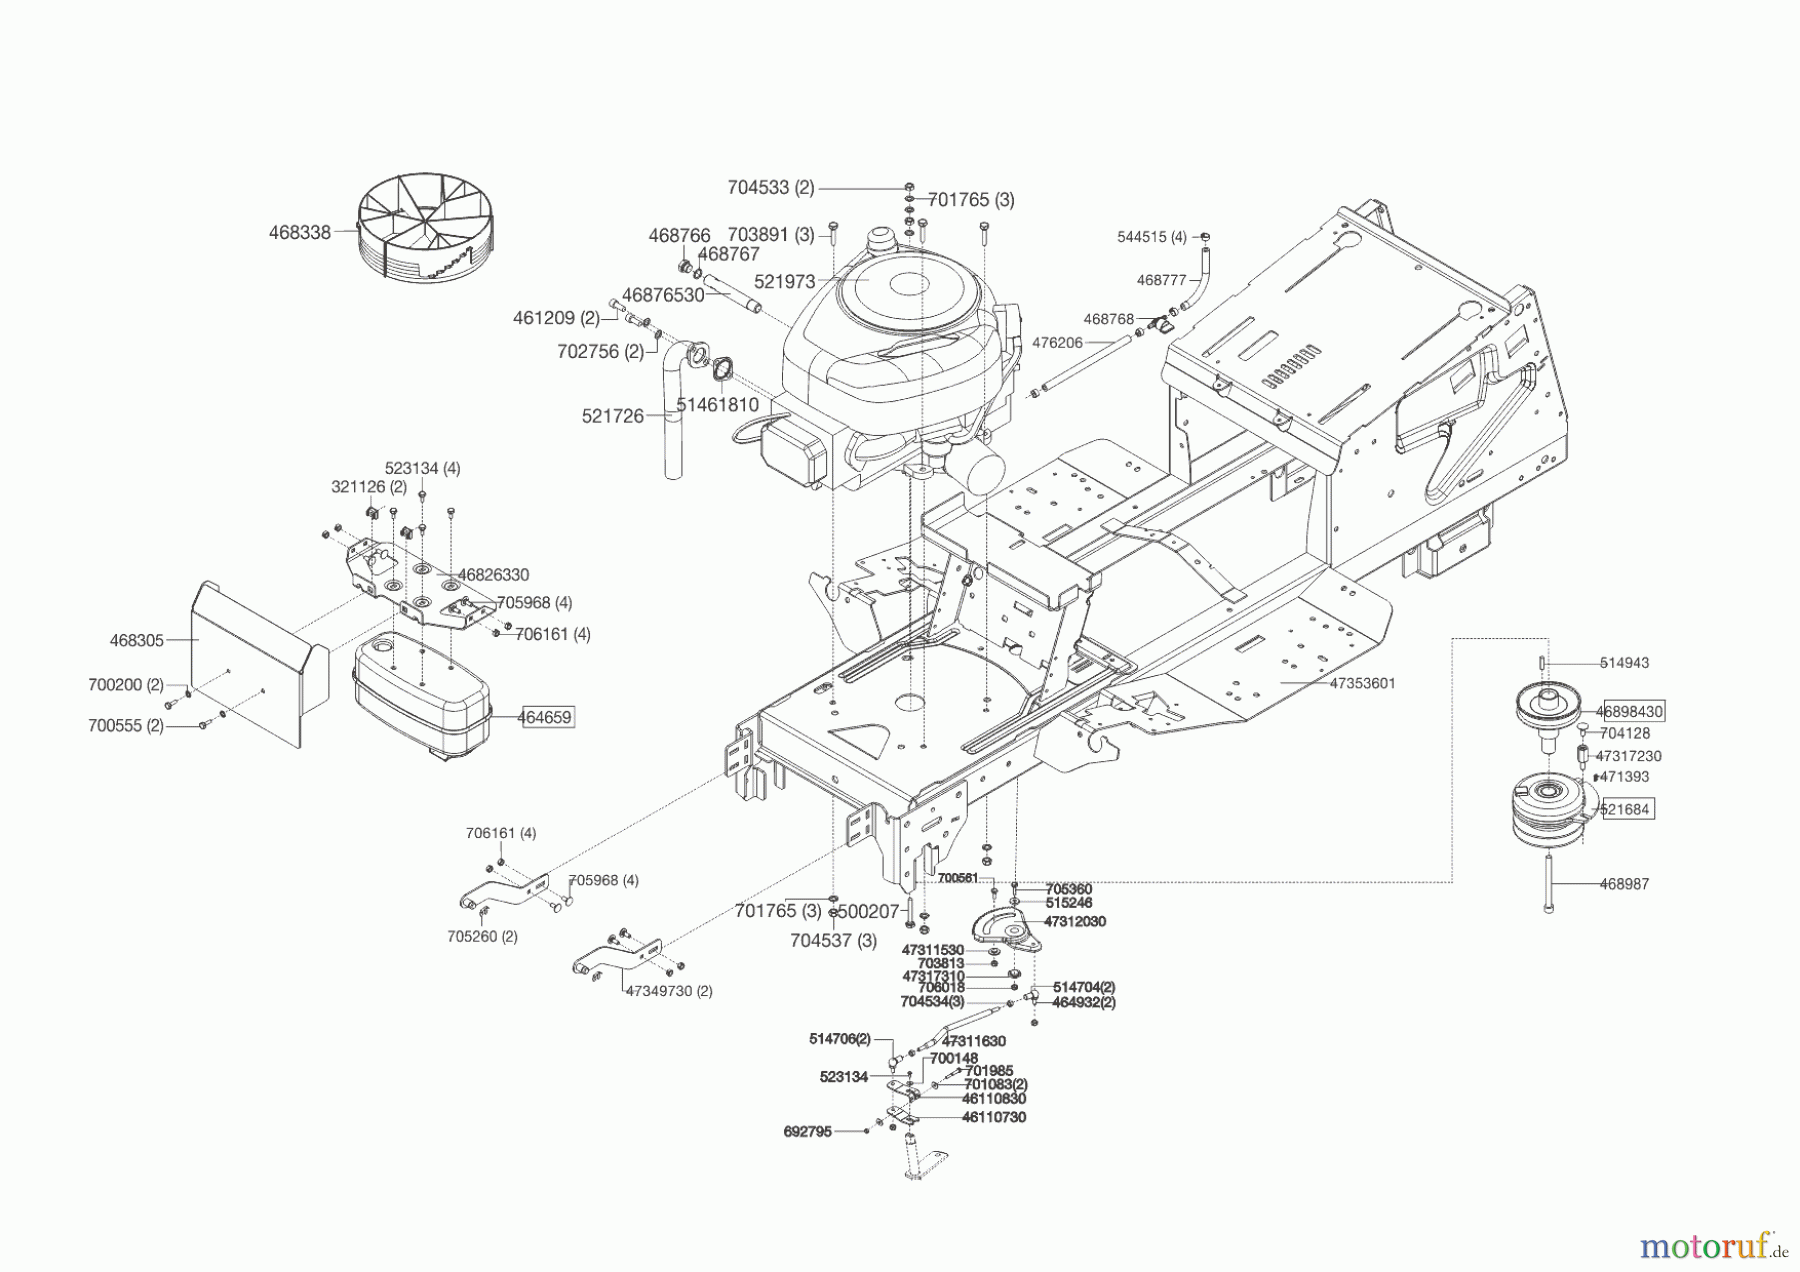  Powerline Gartentechnik Rasentraktor T 18-95.4 HD  09/2016 - 02/2019 Seite 2